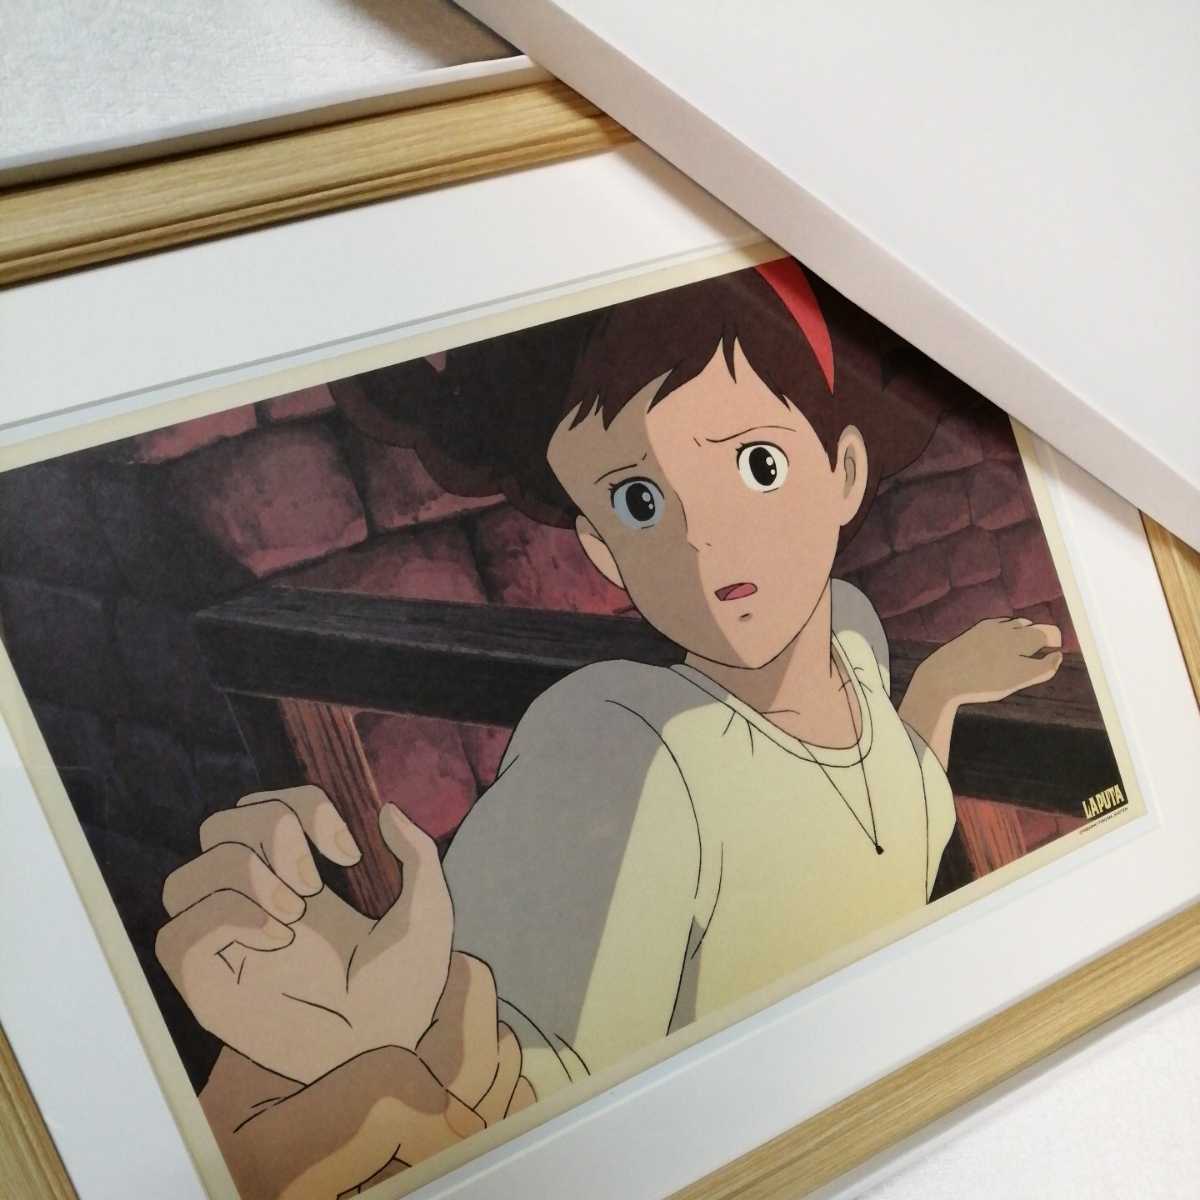 Hace más de 30 años [En ese momento] Studio Ghibli: Castle in the Sky [Objeto enmarcado] Póster, pintura para colgar en la pared, reproducción original, inspección) cel, tarjeta postal, Hayao Miyazaki, historietas, productos de anime, otros